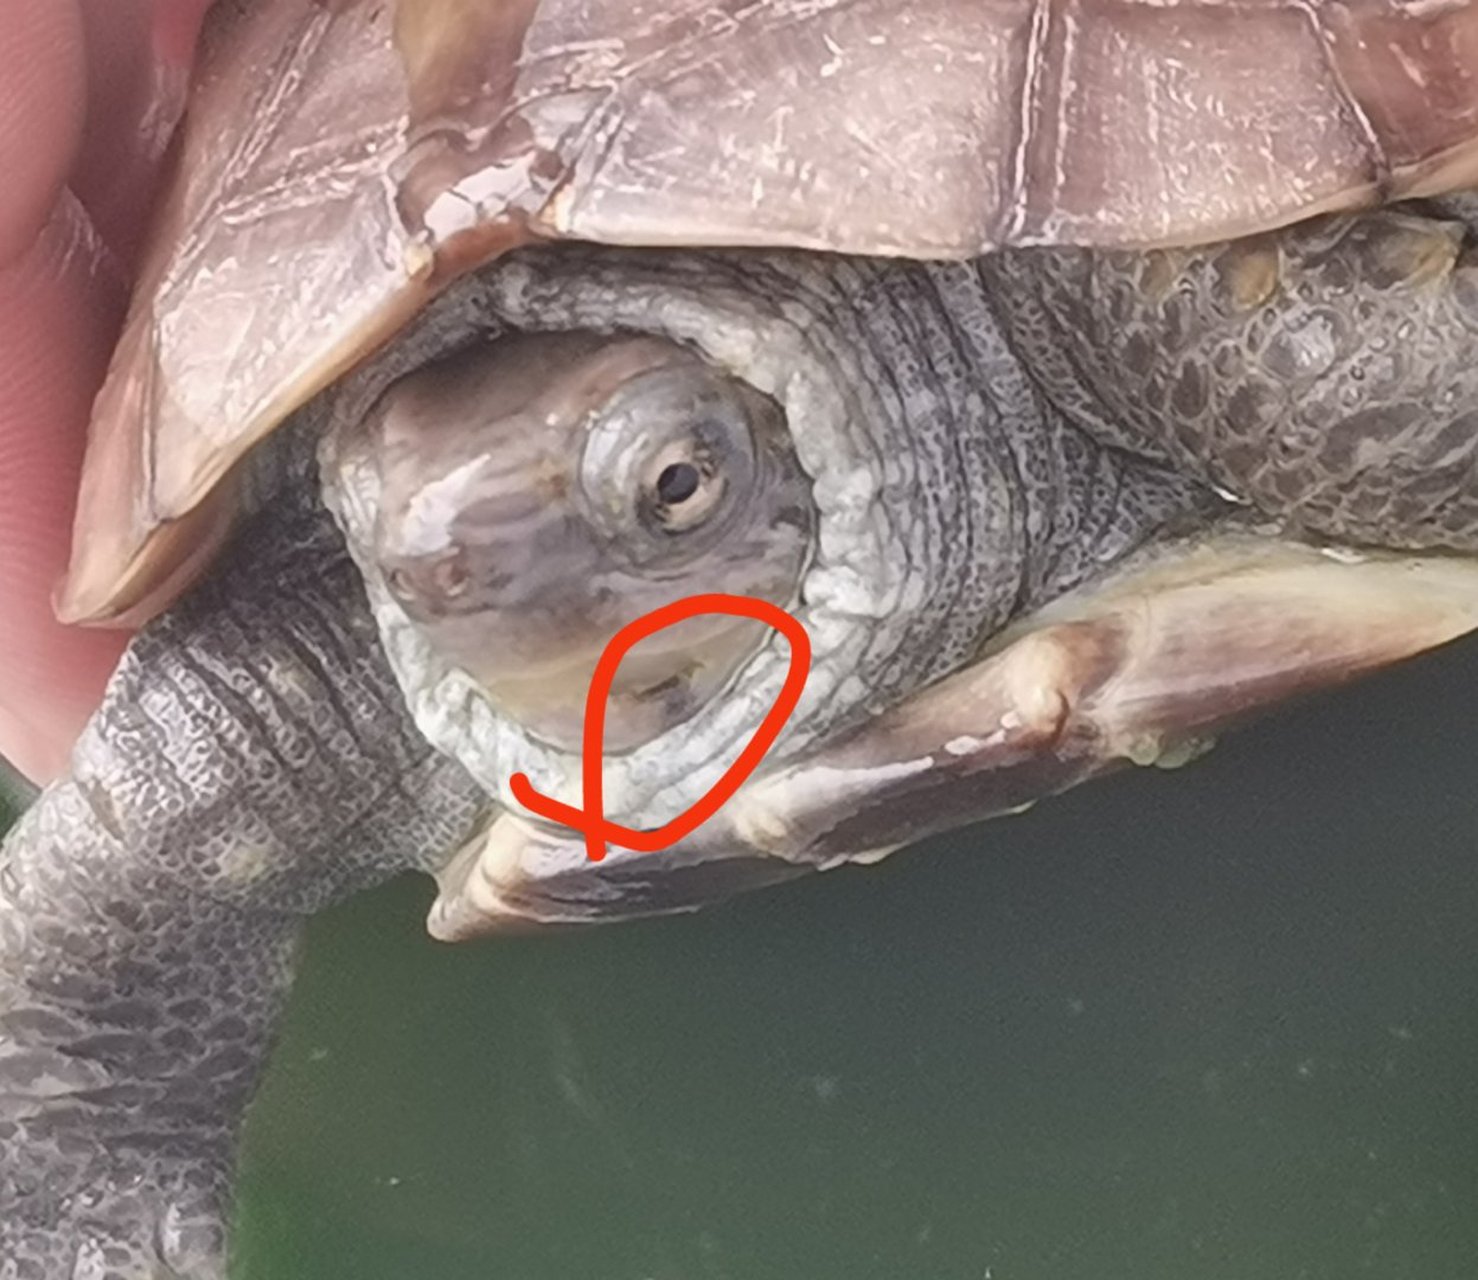 乌龟牙齿下面缺了一点有影响吗?#乌龟